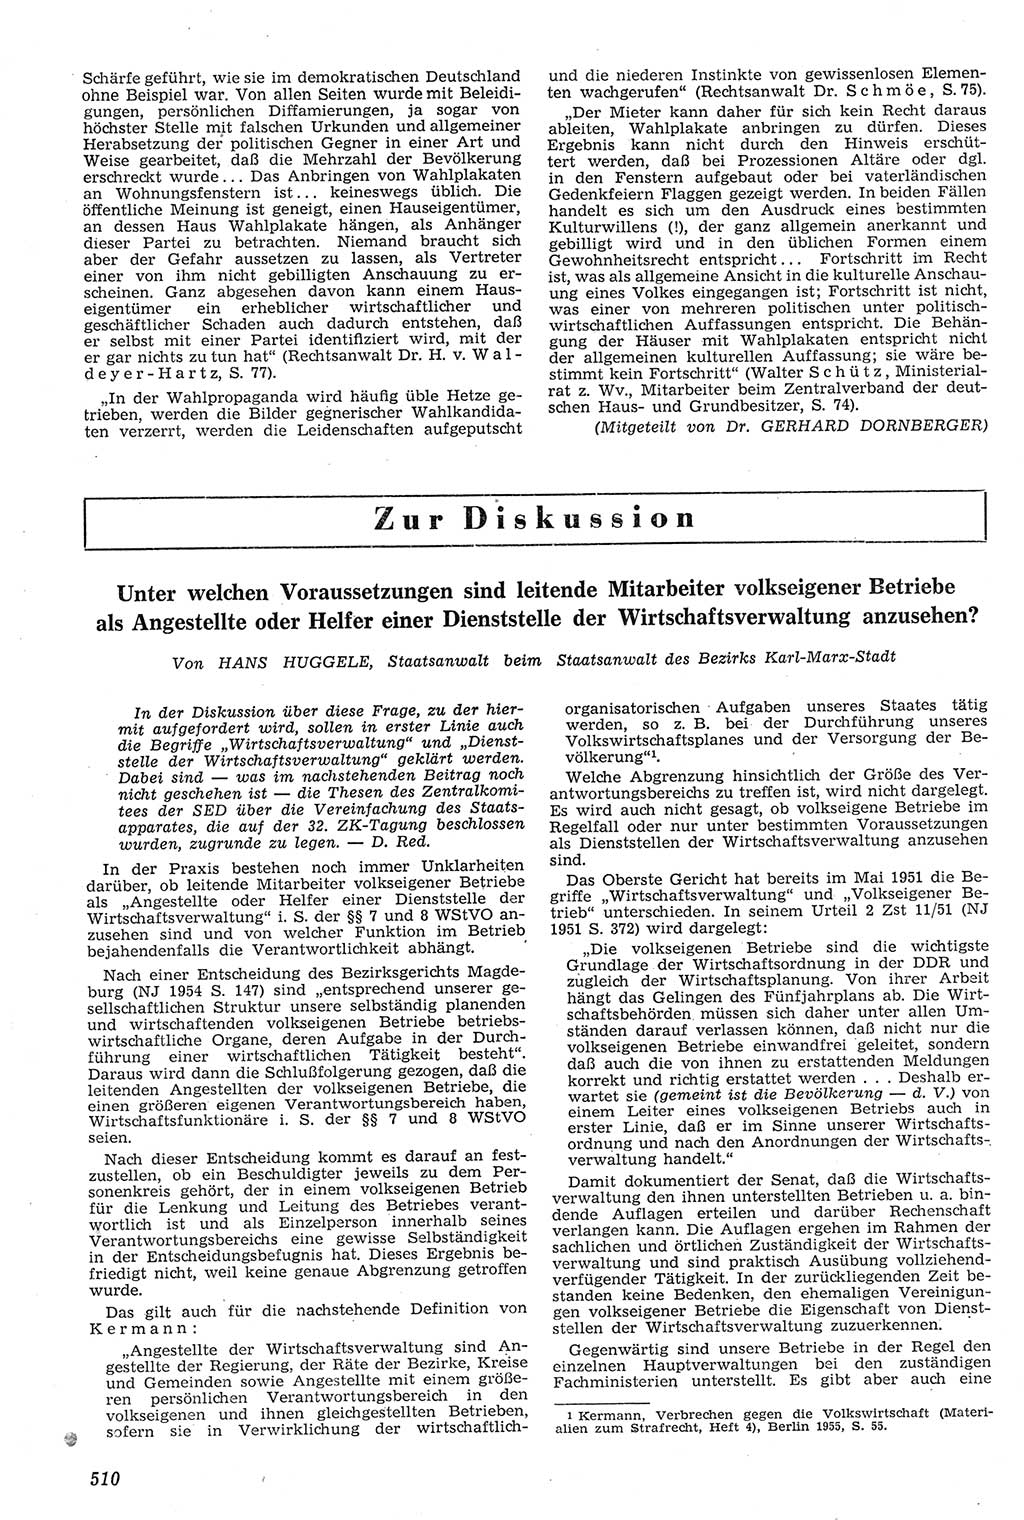 Neue Justiz (NJ), Zeitschrift für Recht und Rechtswissenschaft [Deutsche Demokratische Republik (DDR)], 11. Jahrgang 1957, Seite 510 (NJ DDR 1957, S. 510)